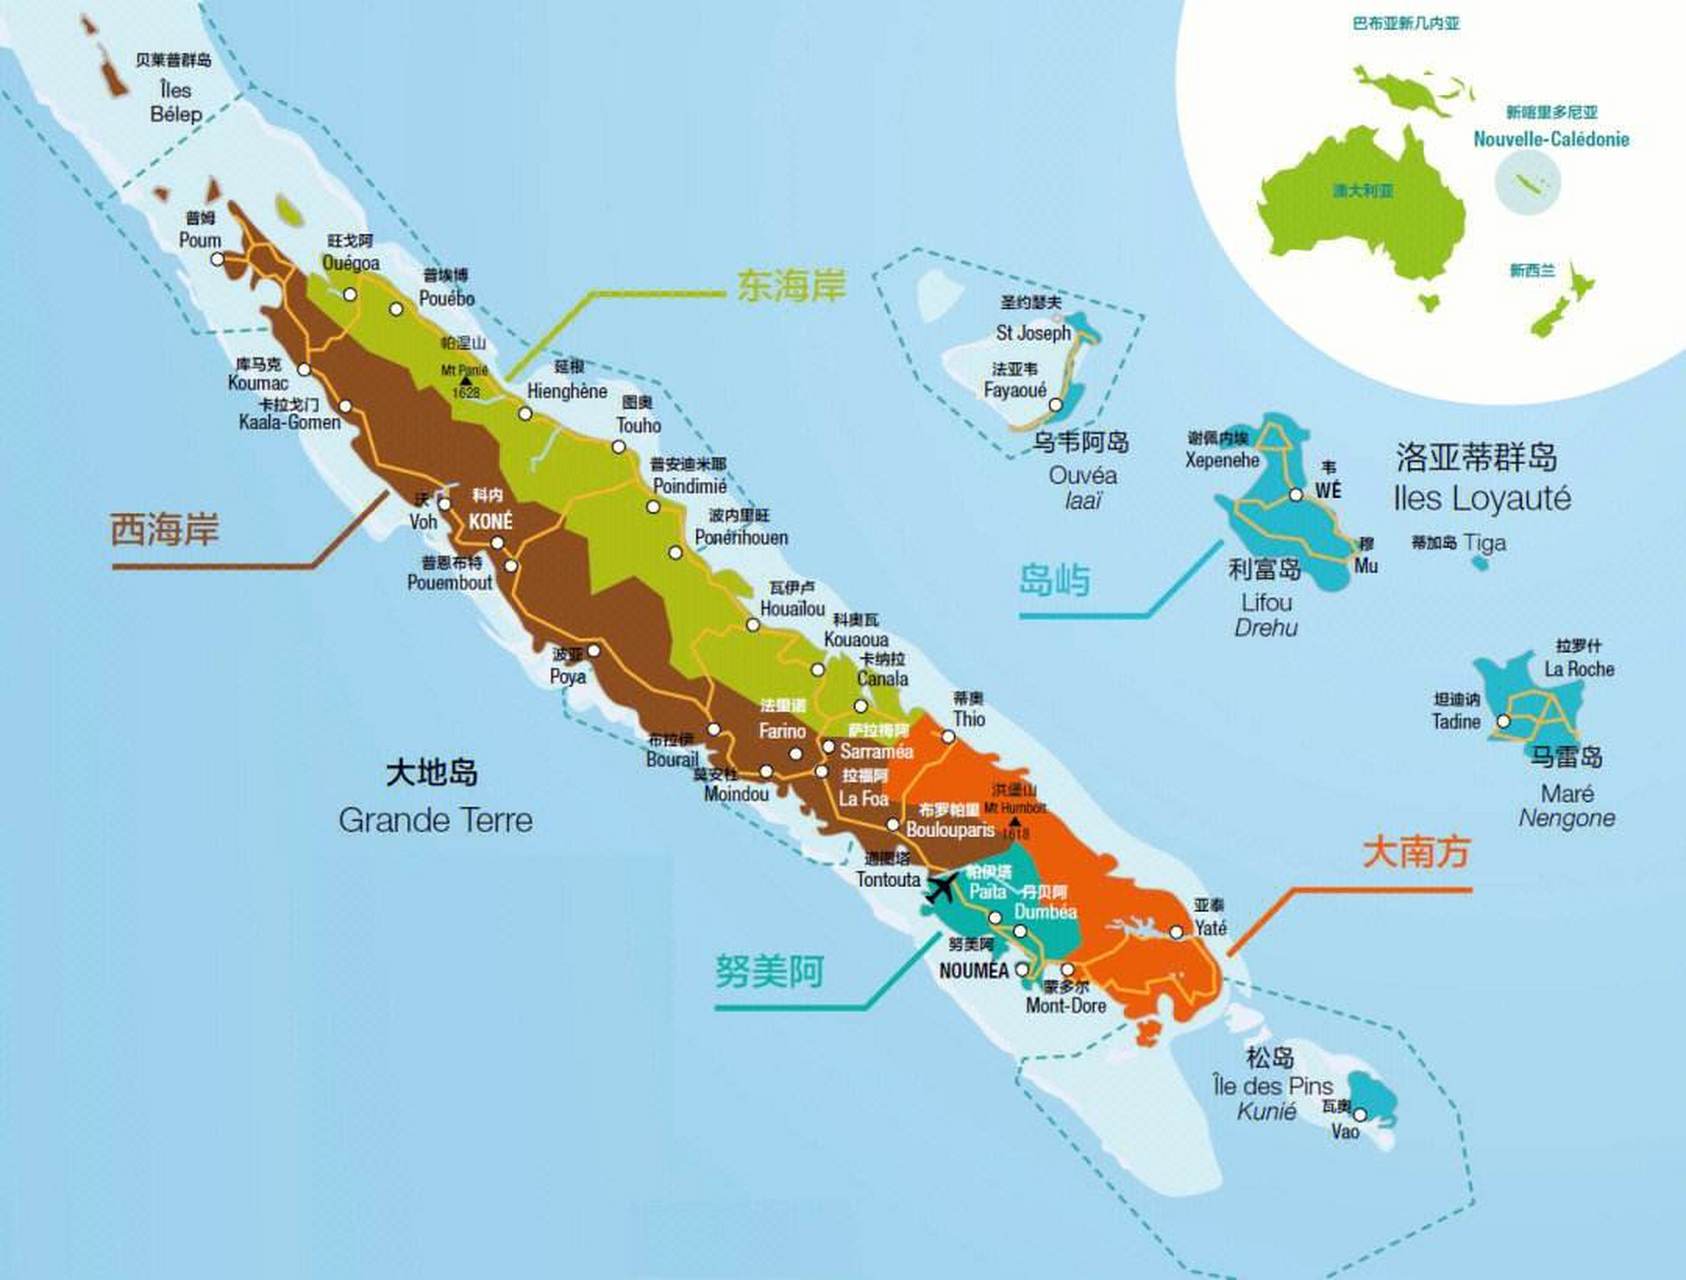 太平洋西南部的新喀里多尼亚岛,是南太平洋最大的岛屿之一